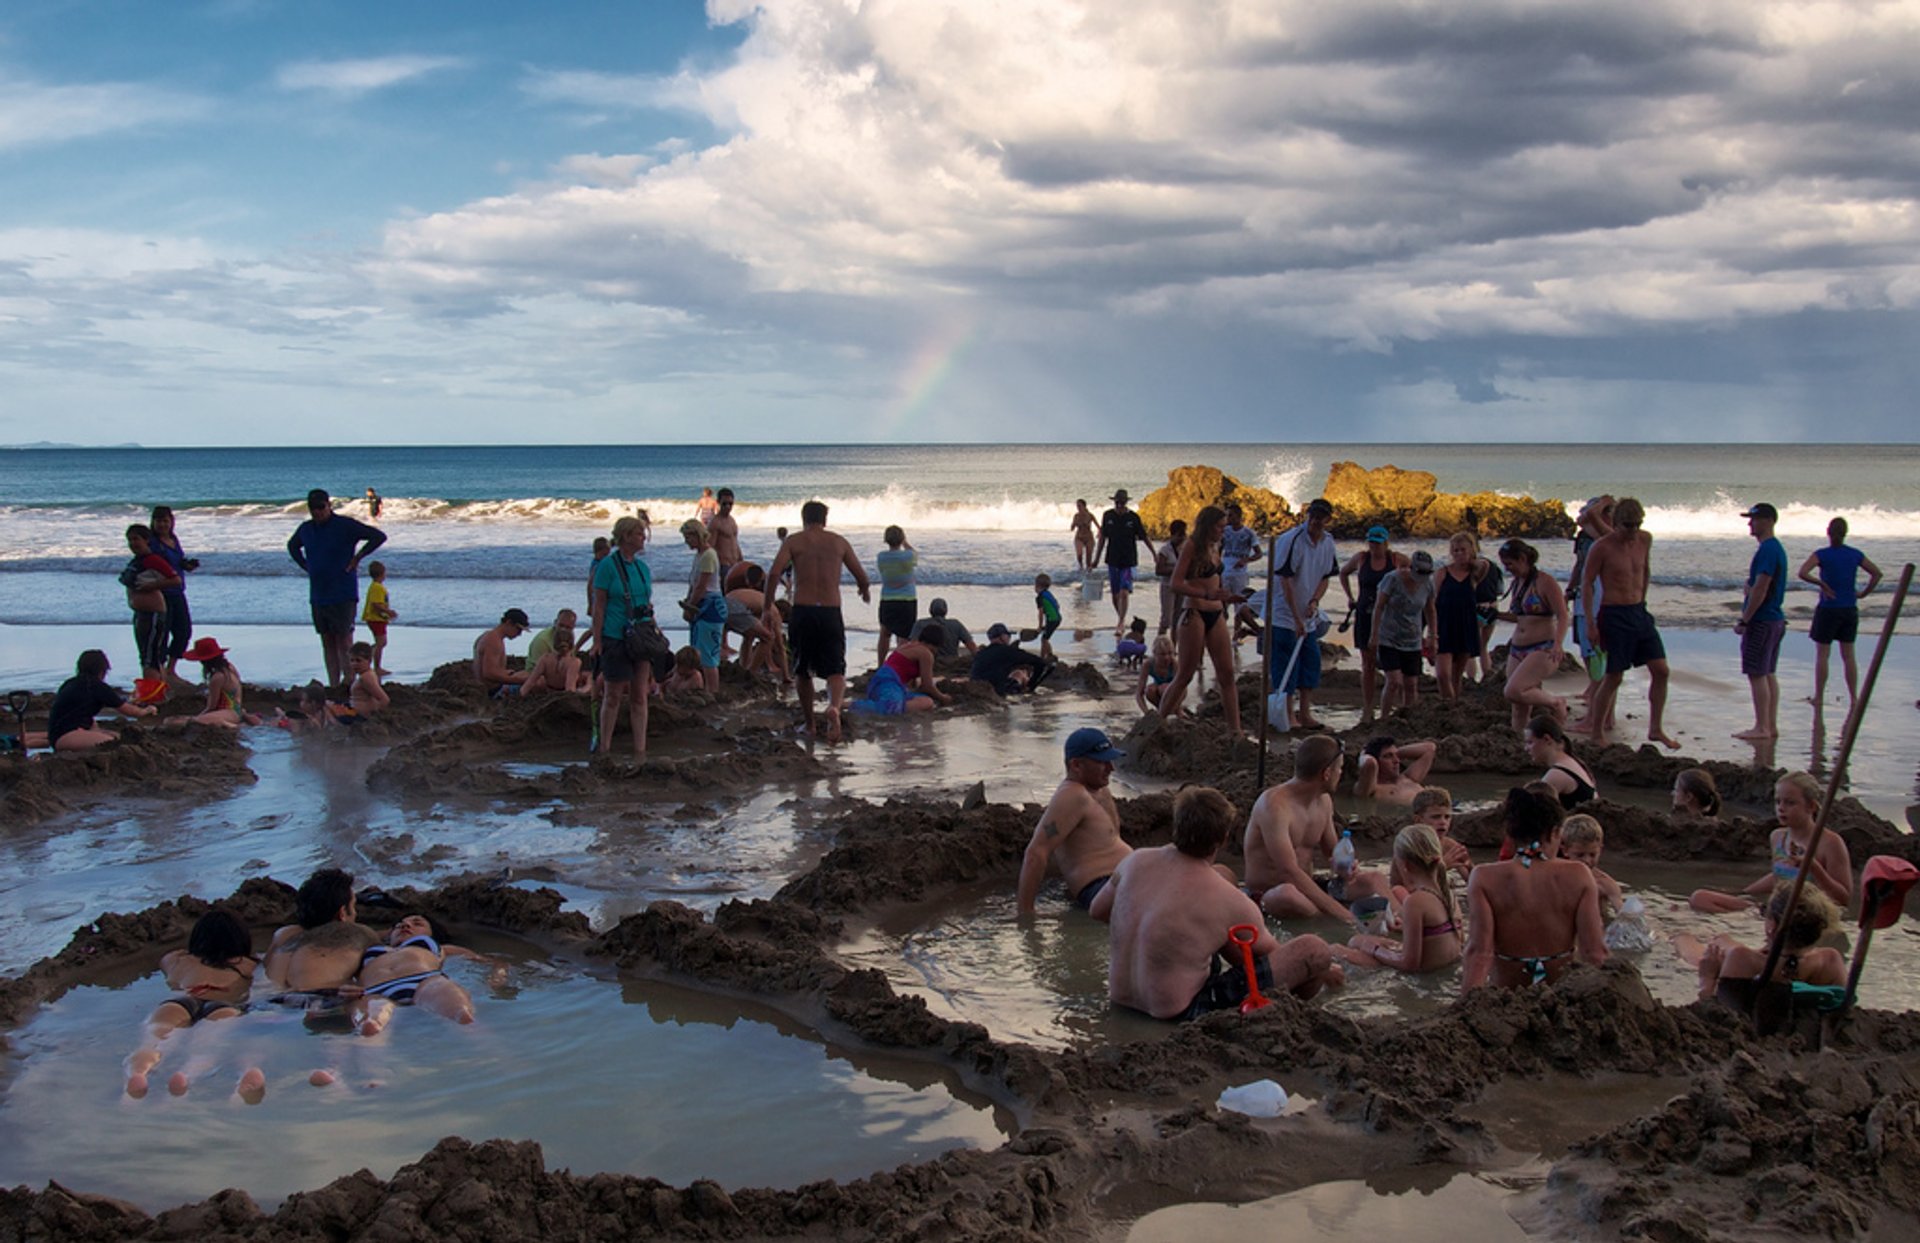 Hot Water Beach at Coromandel Peninsula